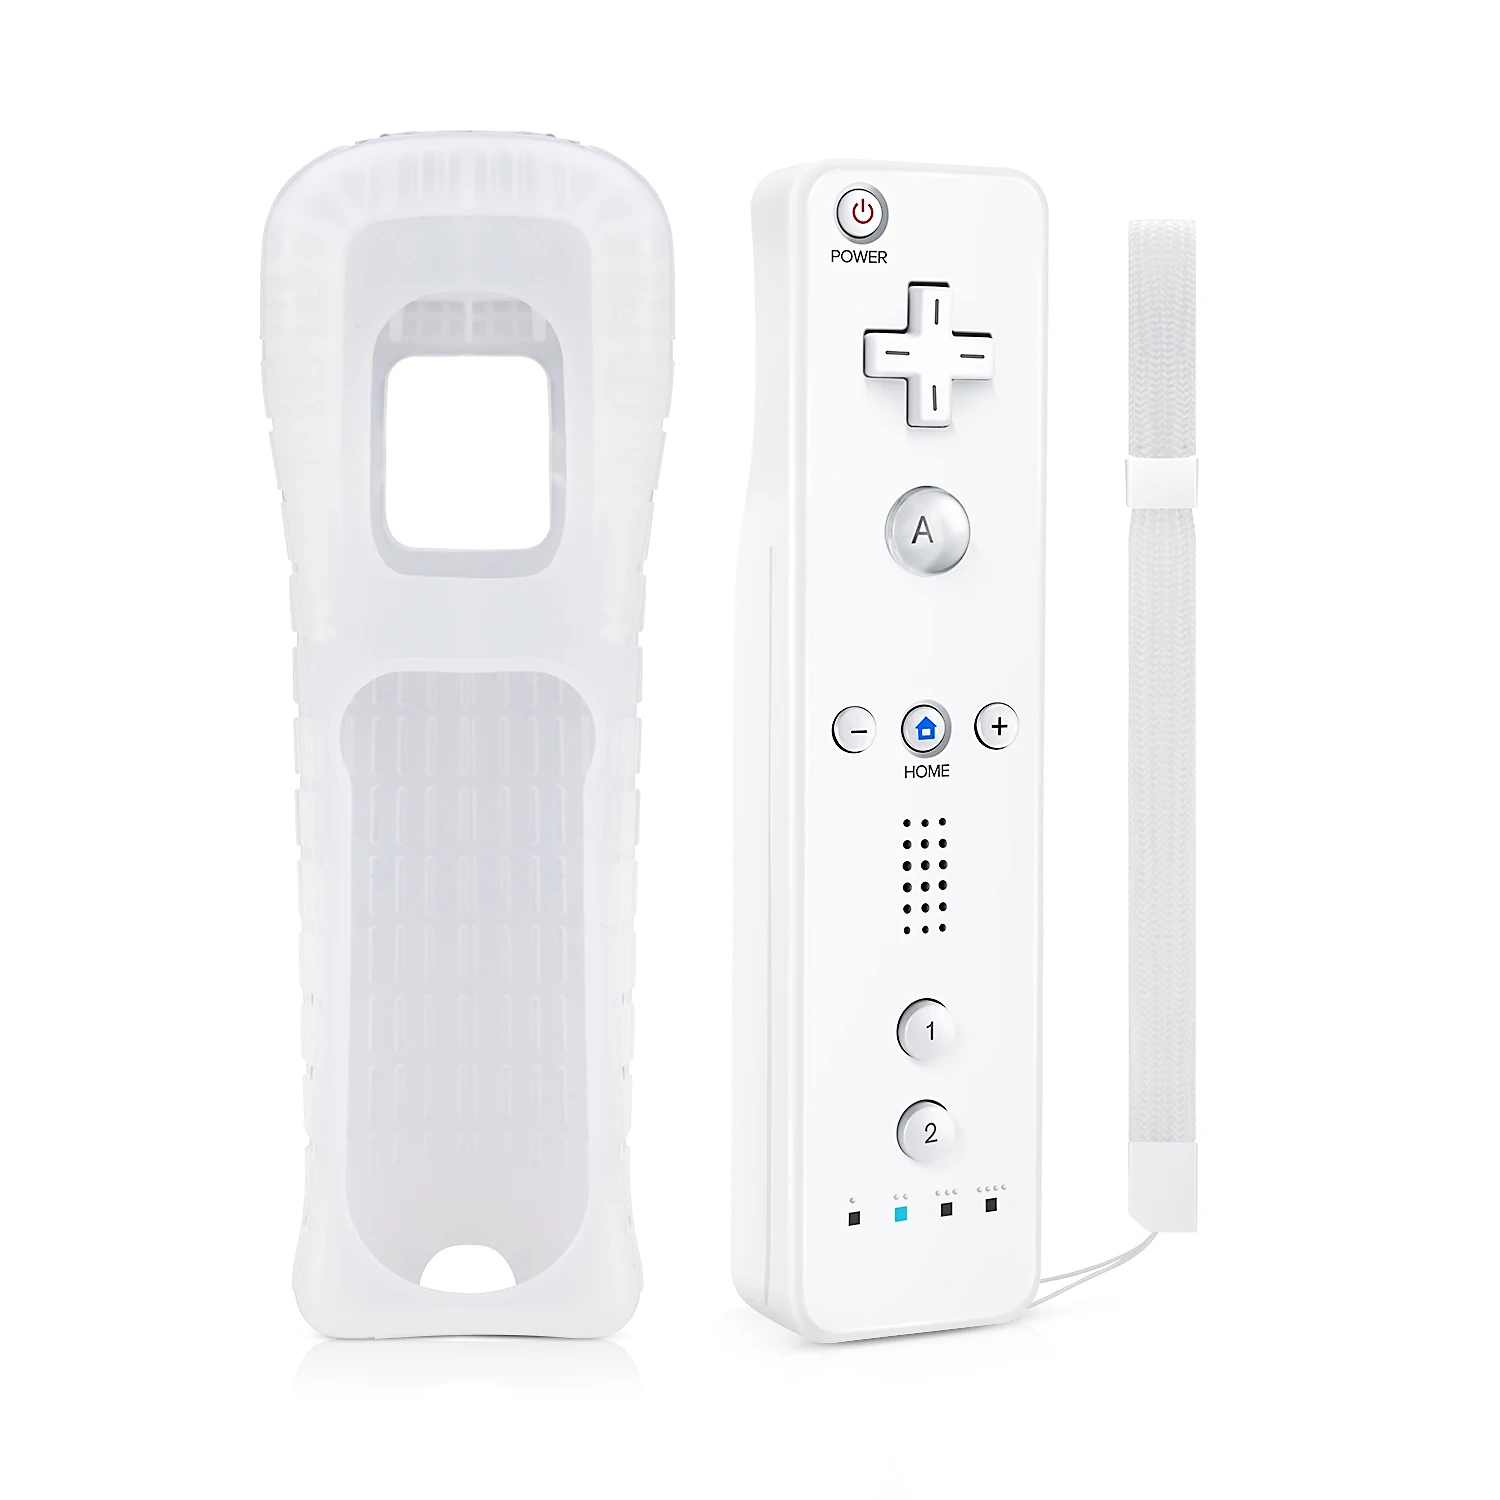 带有用于任天堂wii Wii U的3轴运动传感器的wii遥控器无线 带有硅胶套和腕带 Buy Wii遥控器3轴运动传感器 Wii控制器无线 Wii遥控器motion Plus Product On Alibaba Com